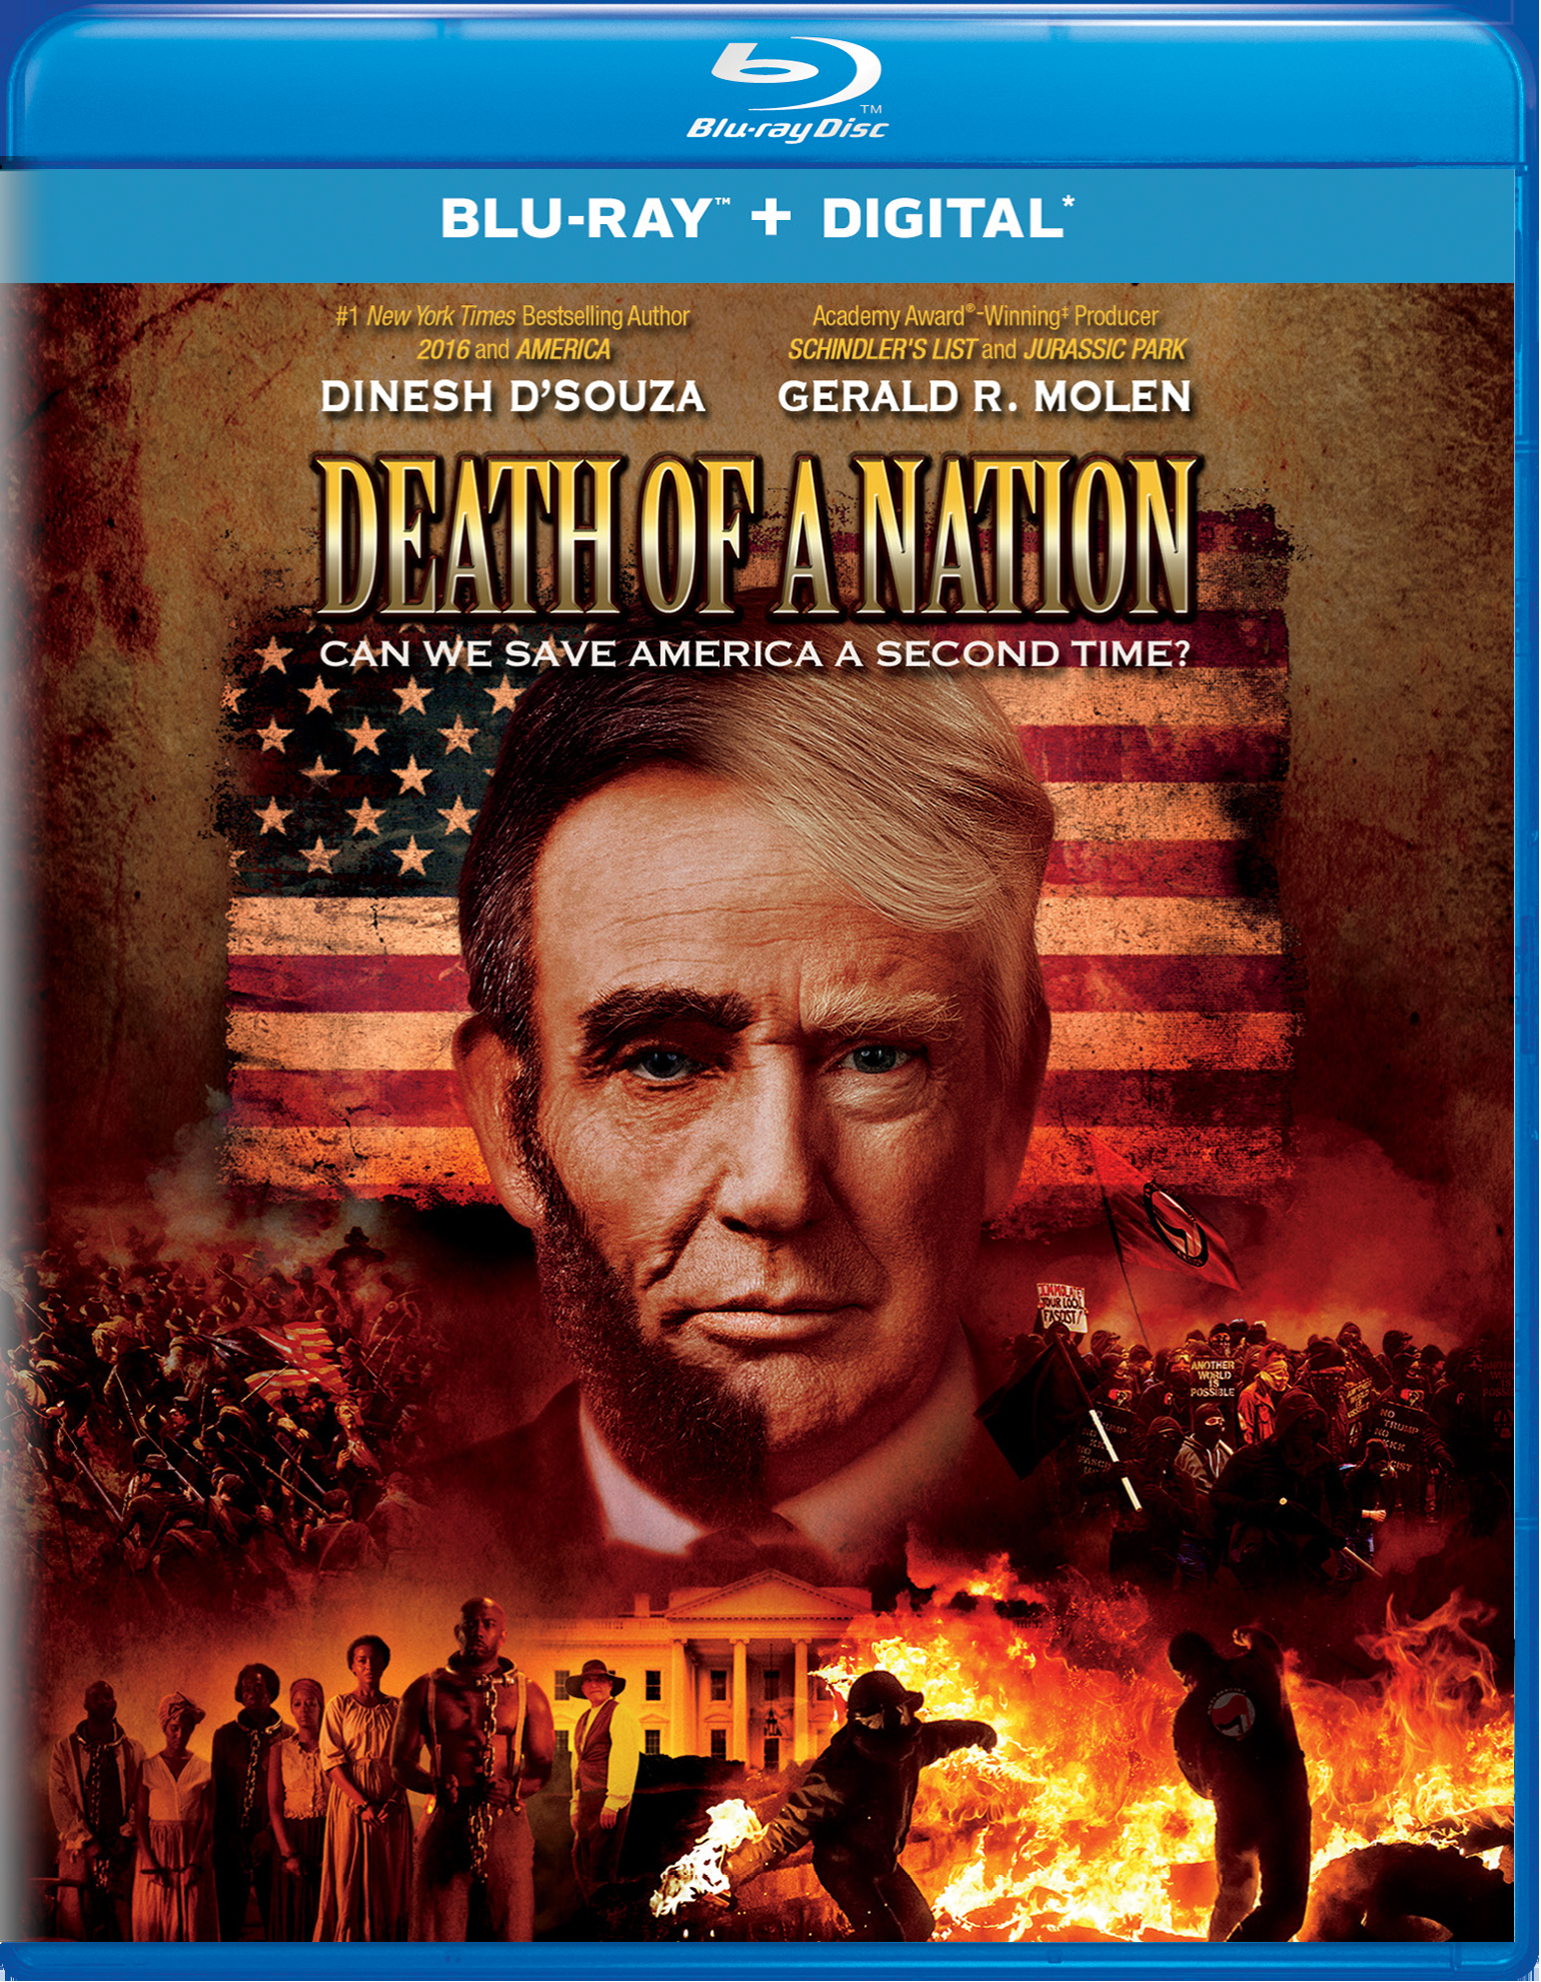 Death Of A Nation (Blu-ray + Digital HD) - Blu-ray [ 2018 ]  - Documentaries On Blu-ray